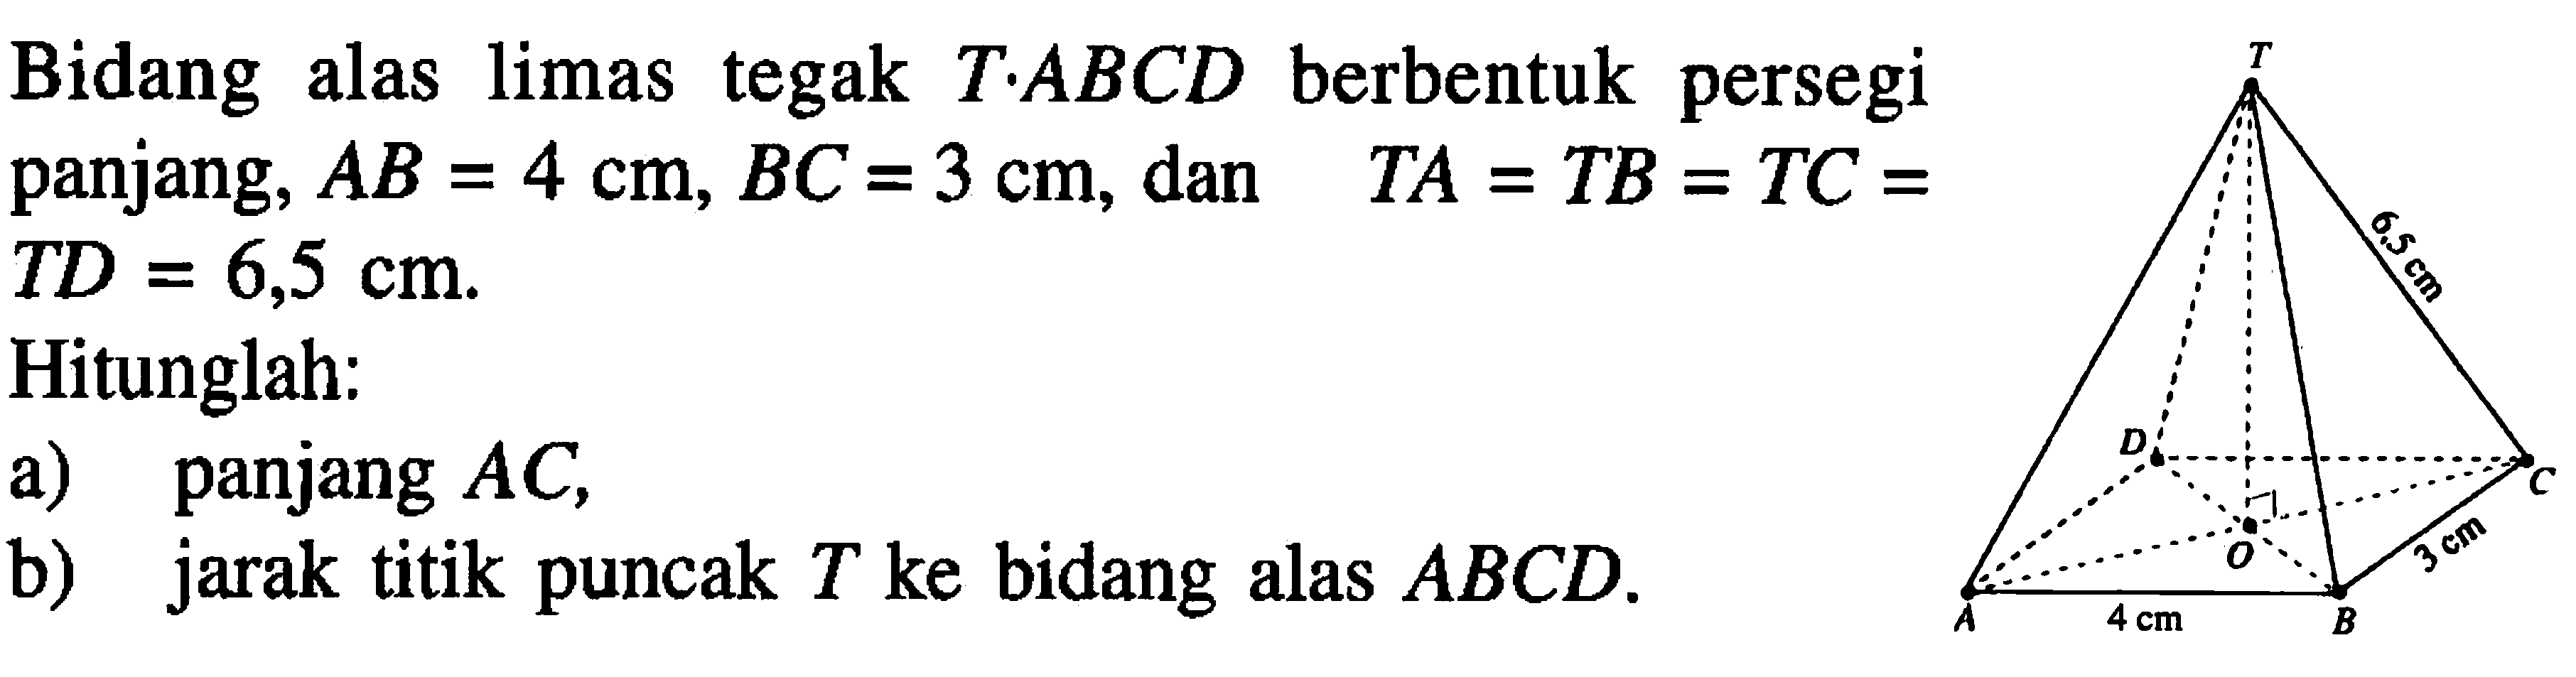 Bidang alas limas tegak T.ABCD berbentuk persegi panjang, AB=4 cm, BC=3 cm, dan TA=TB=TC=TD=6,5 cm. Hitunglah: a) panjang AC b) jarak titik puncak T ke bidang alas ABCD. T 6.5 cm D C O 3 cm A 4 cm B